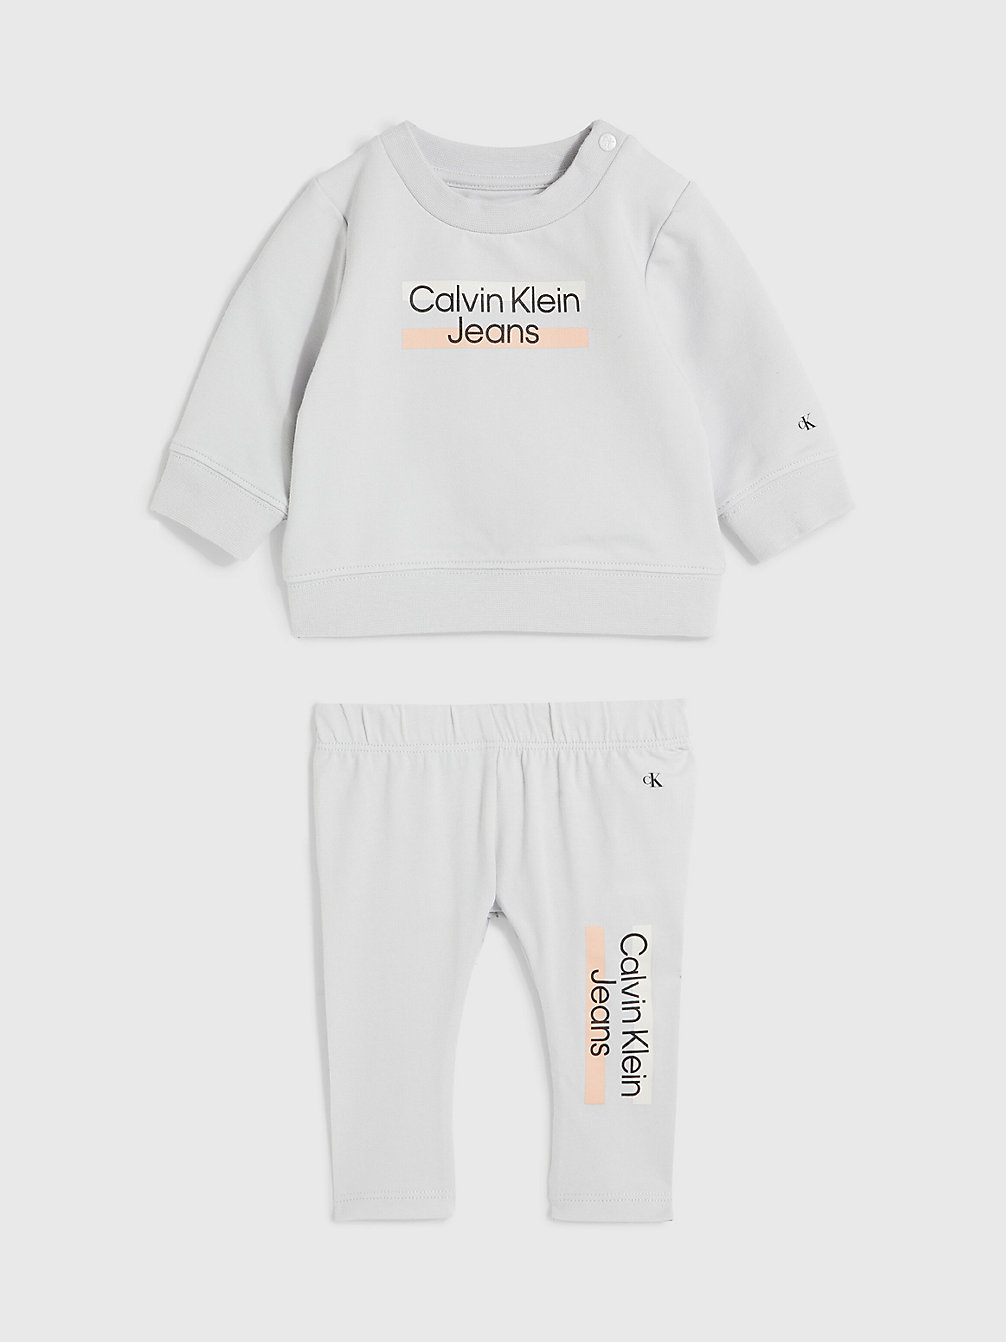 GHOST GREY Newborn Trainingspak Met Logo undefined newborn Calvin Klein